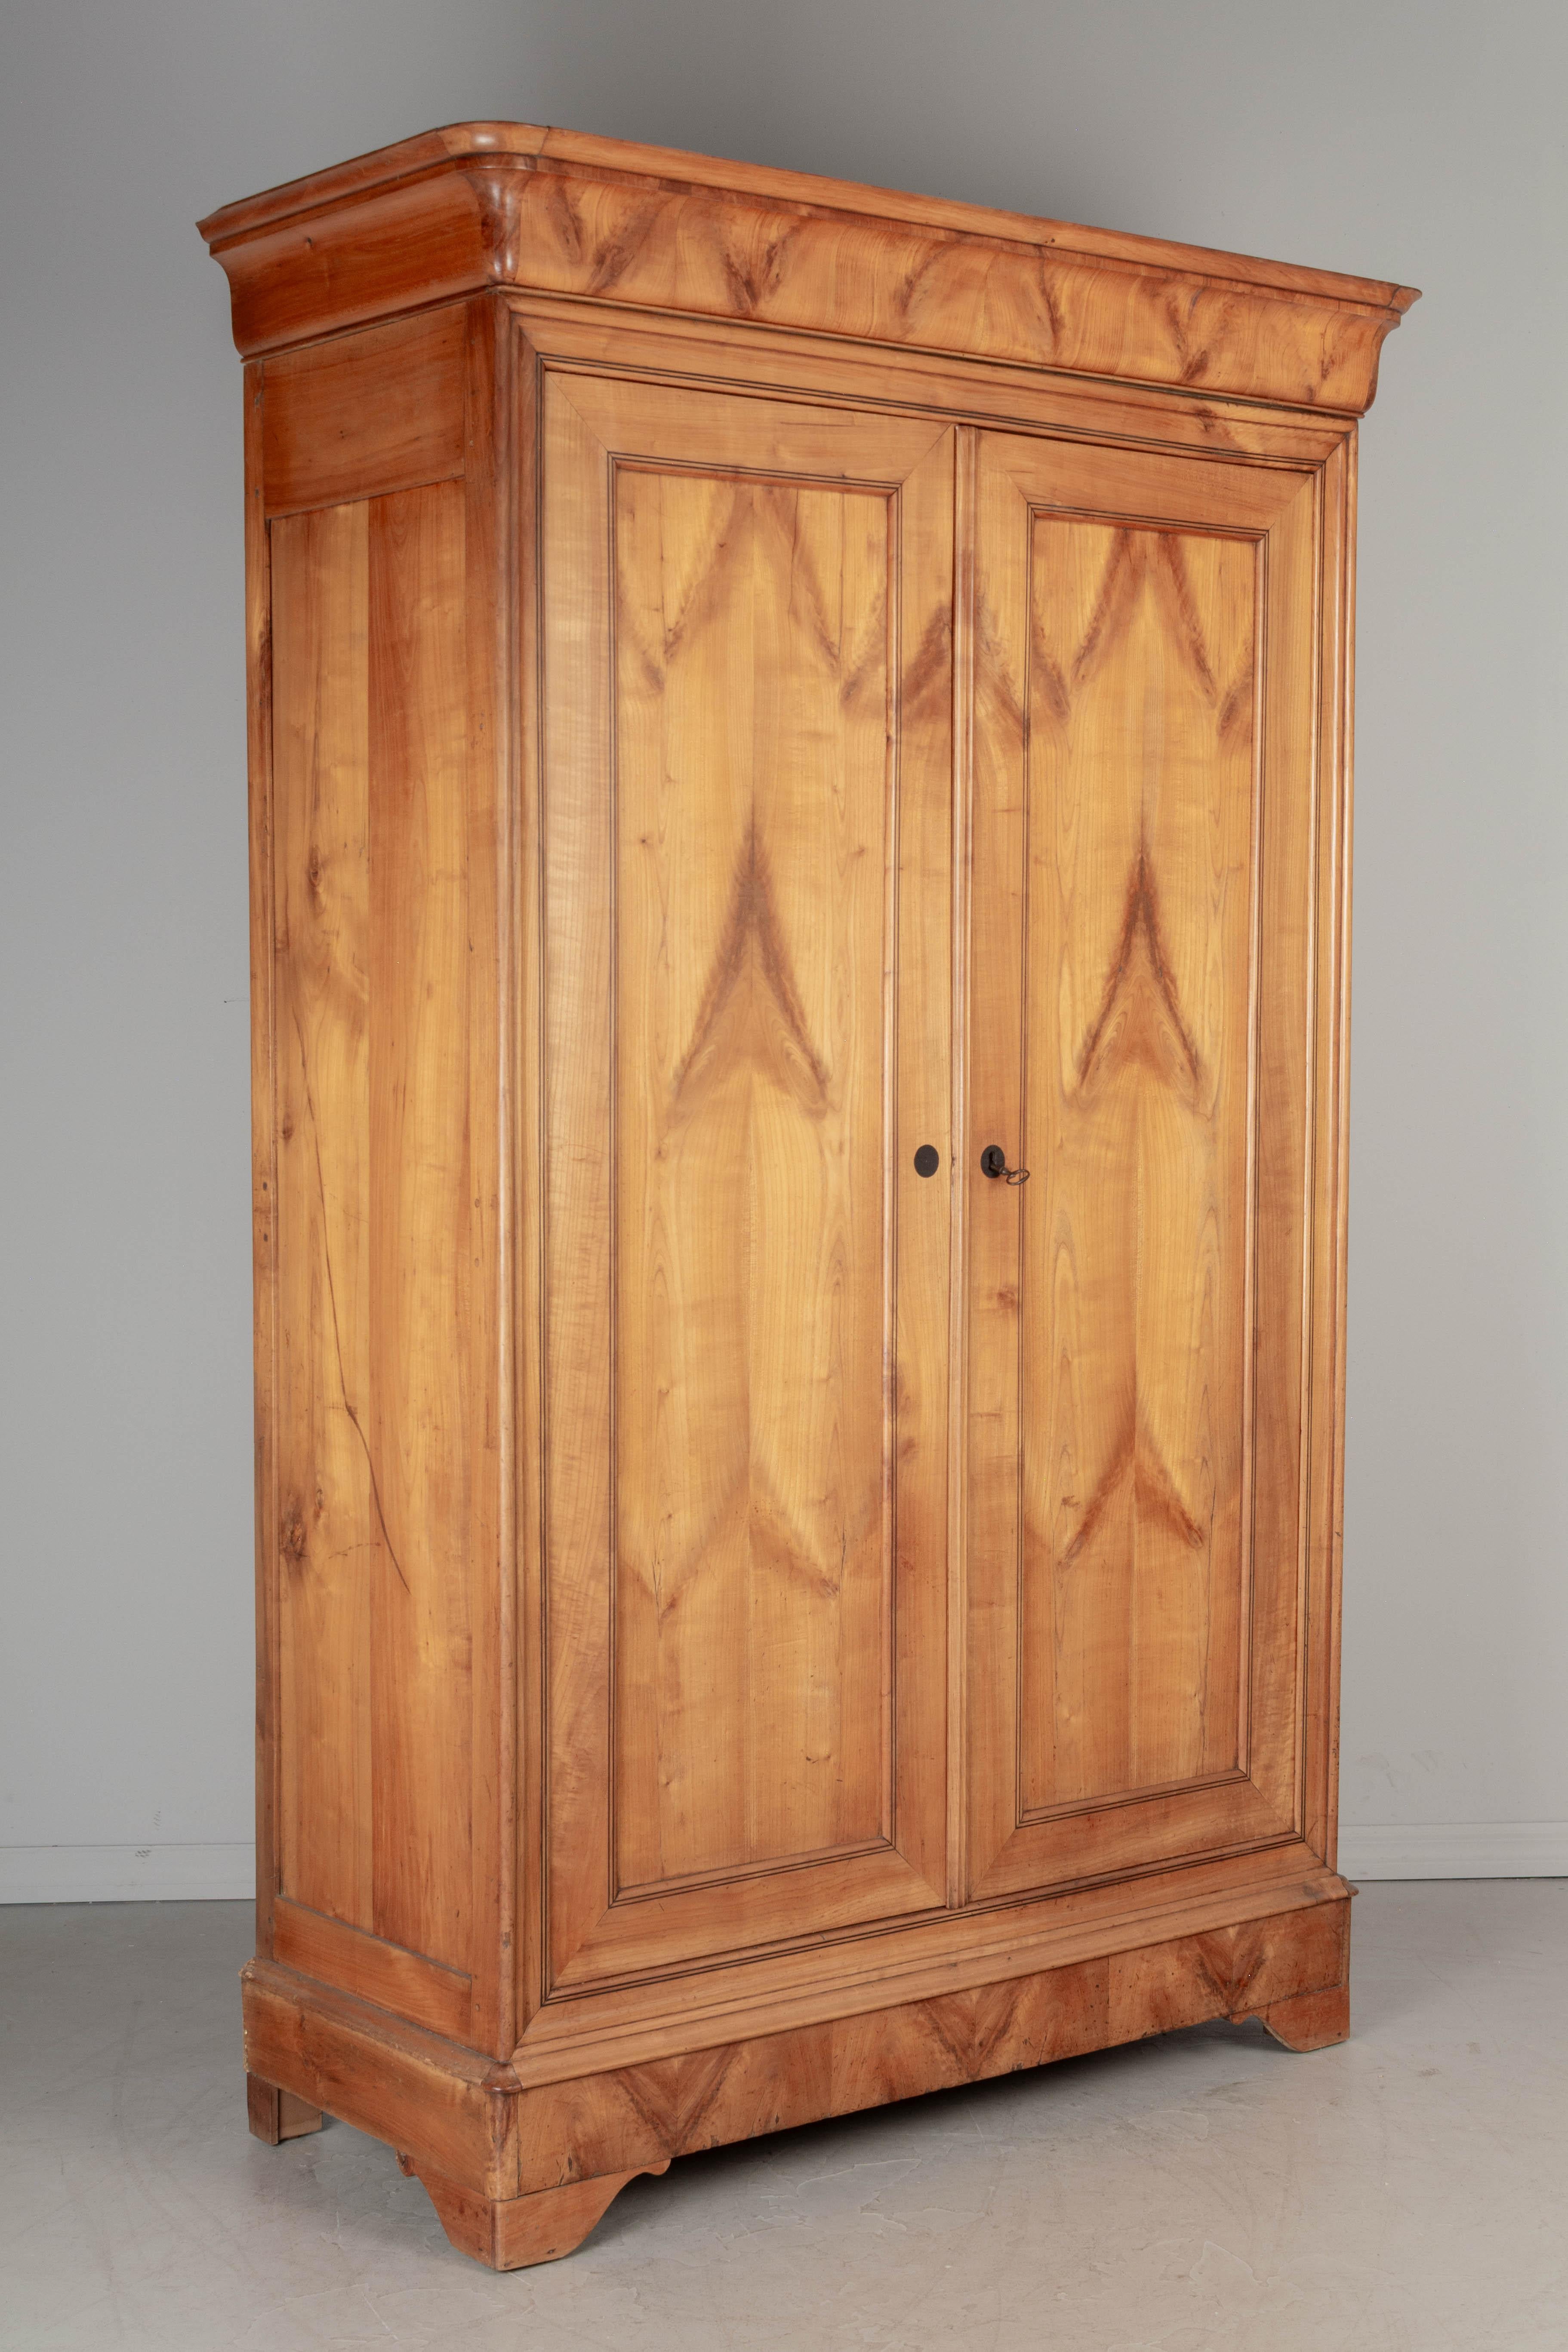 Ein französischer Louis-Philippe-Schrank aus dem 19. Jahrhundert aus massivem Kirschbaumholz mit schöner, farblich abgestimmter Maserung und feinen, linearen Intarsien um den Umfang der Türen. Der Innenraum bietet mit zwei Einlegeböden reichlich